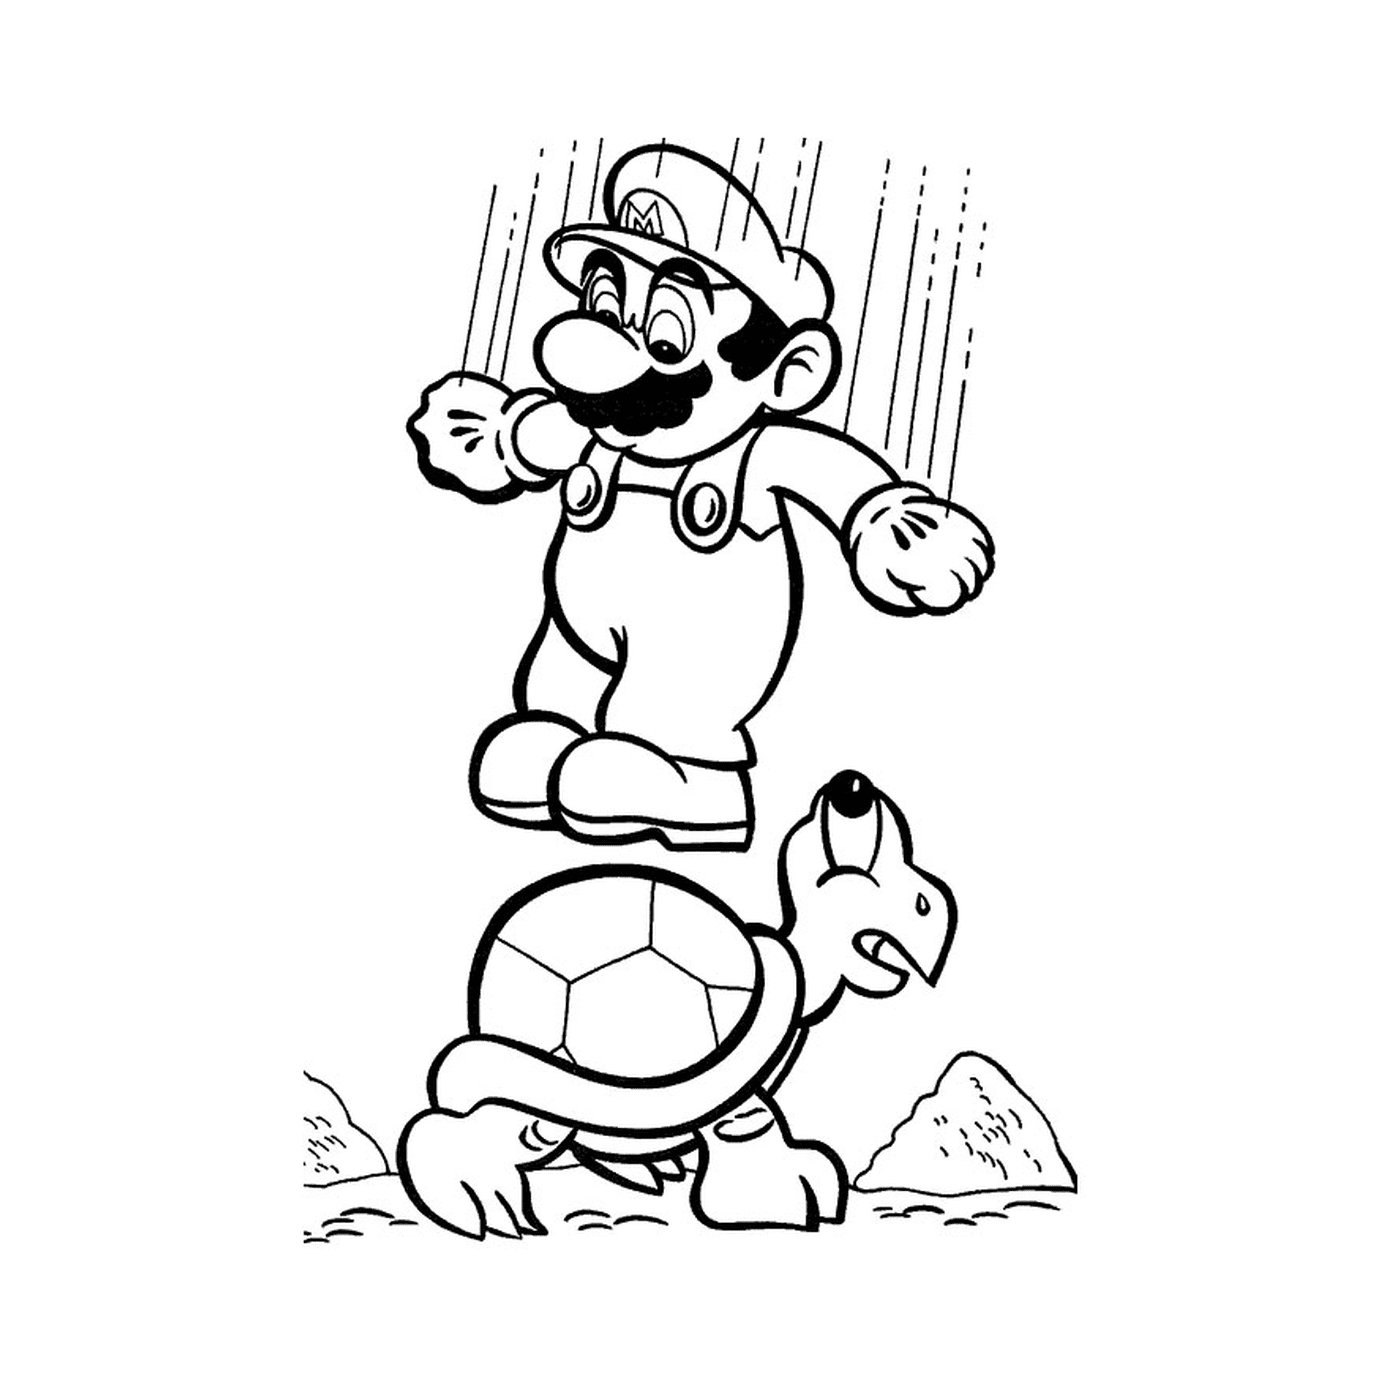  Марио и черепаха 